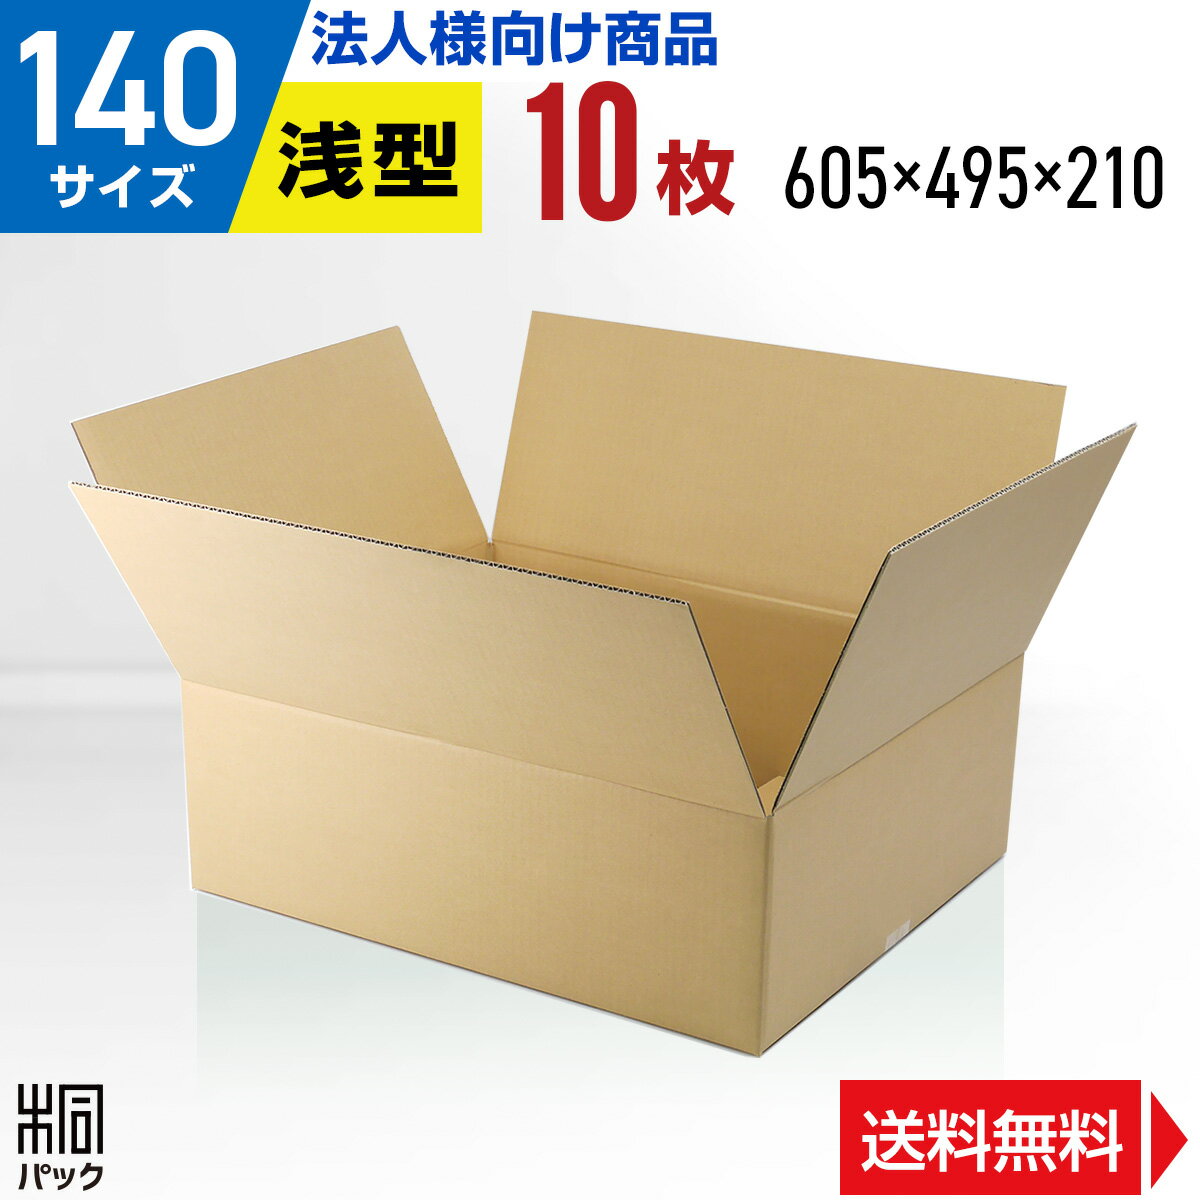 【法人特価】段ボール 箱 140サイズ 